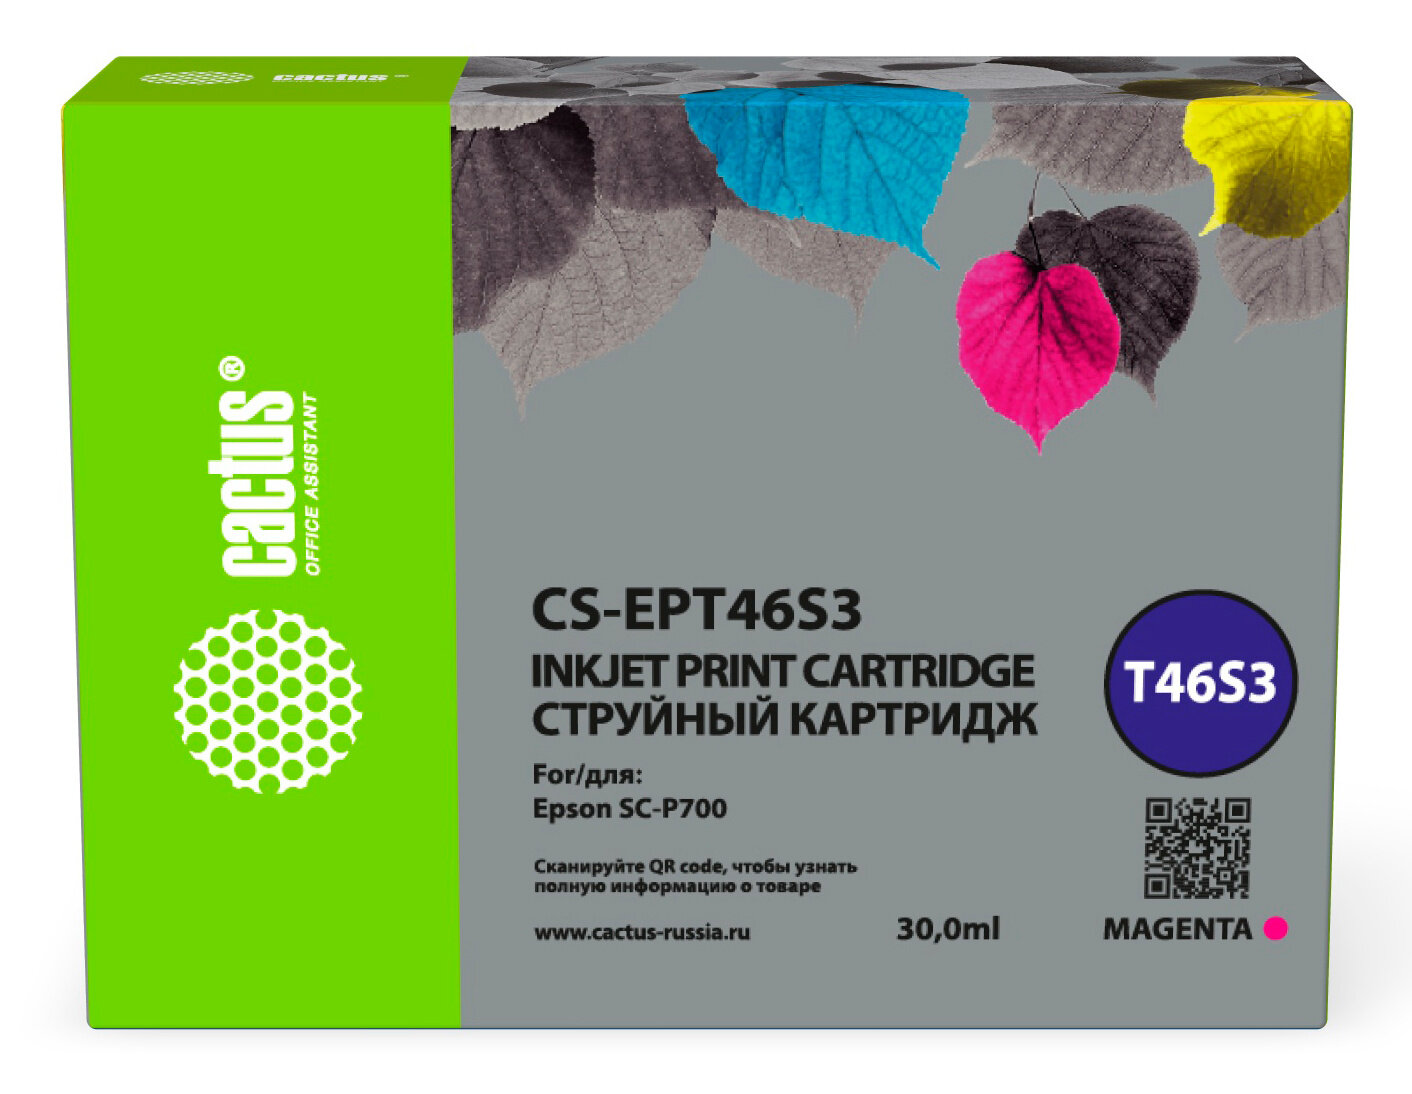 Картридж T46S3 Magenta для принтера Эпсон Epson SureColor SC-P700